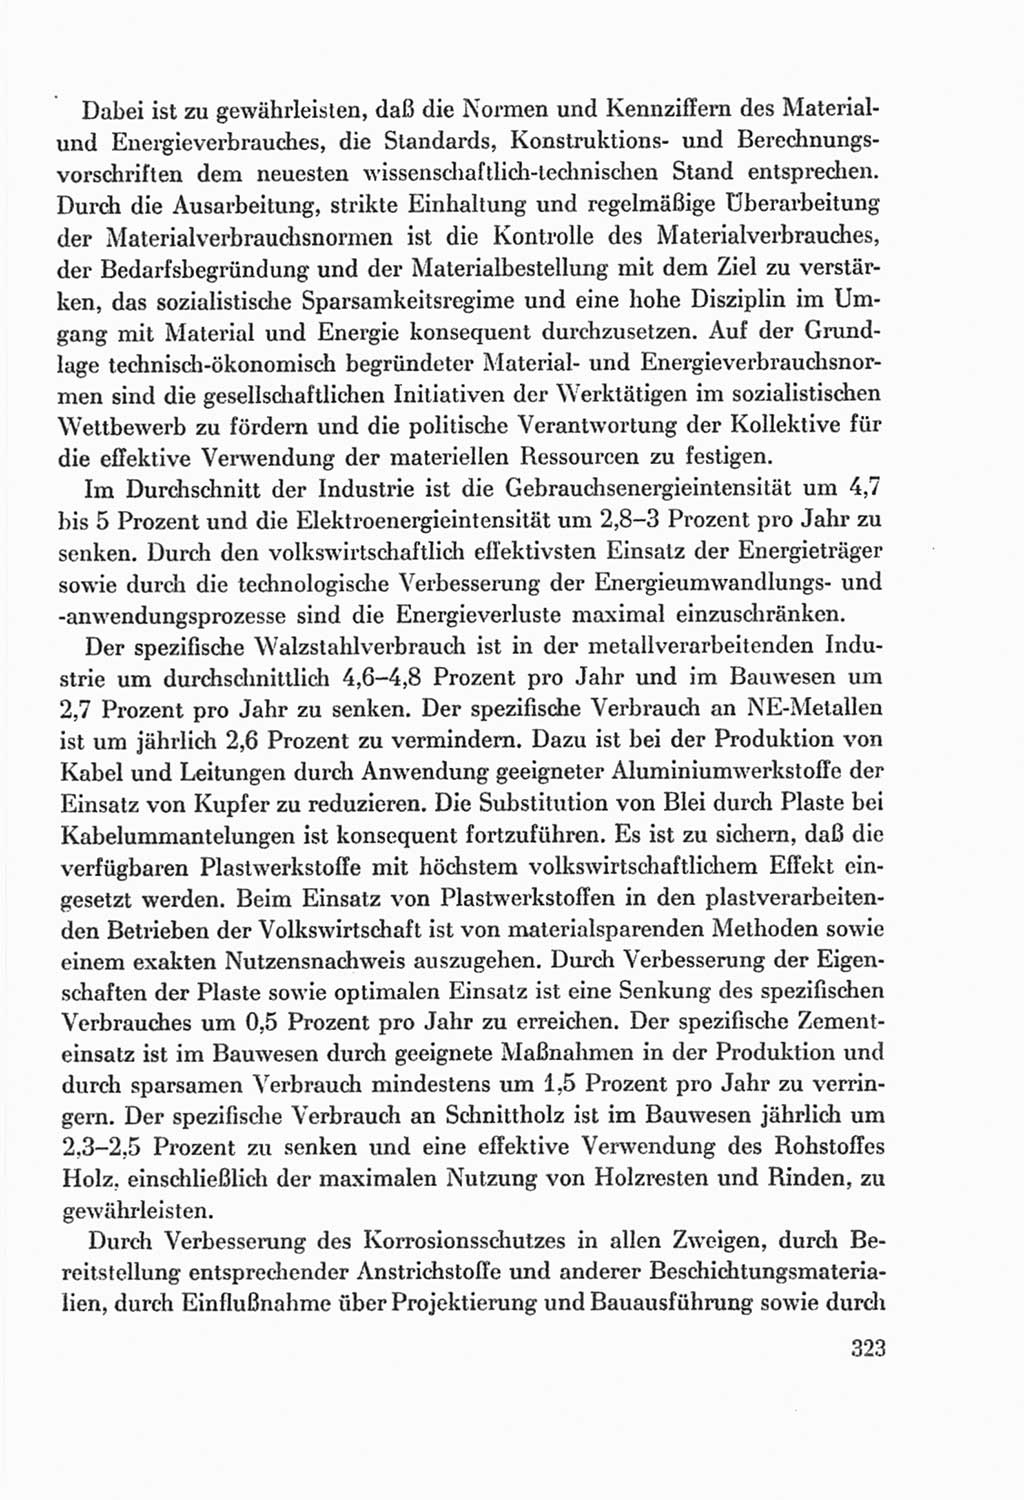 Protokoll der Verhandlungen des Ⅸ. Parteitages der Sozialistischen Einheitspartei Deutschlands (SED) [Deutsche Demokratische Republik (DDR)] 1976, Band 2, Seite 323 (Prot. Verh. Ⅸ. PT SED DDR 1976, Bd. 2, S. 323)